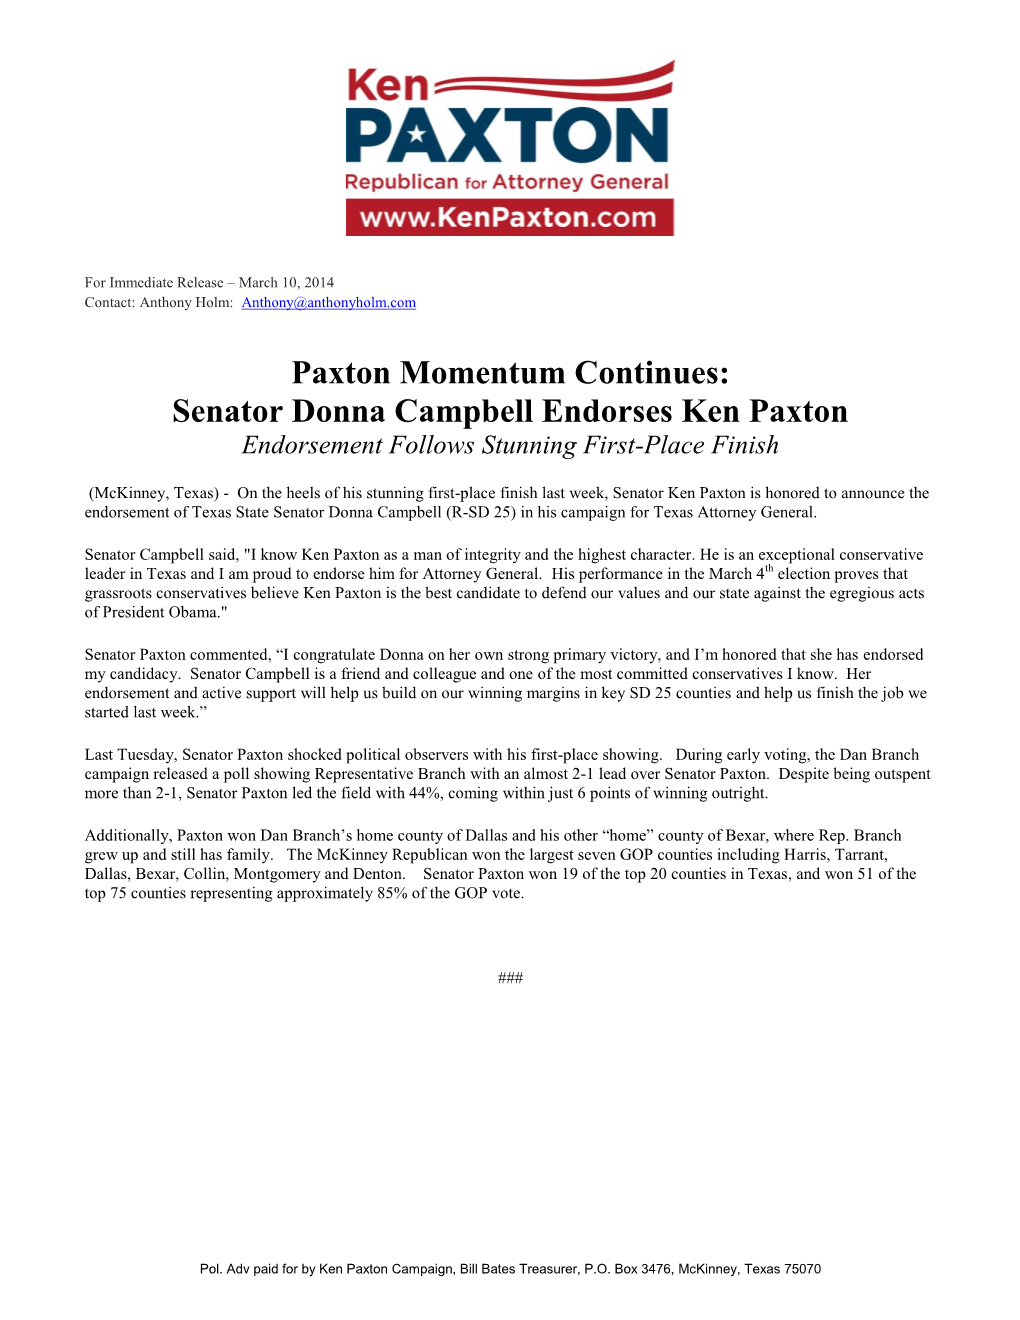 Senator Donna Campbell Endorses Ken Paxton Endorsement Follows Stunning First-Place Finish